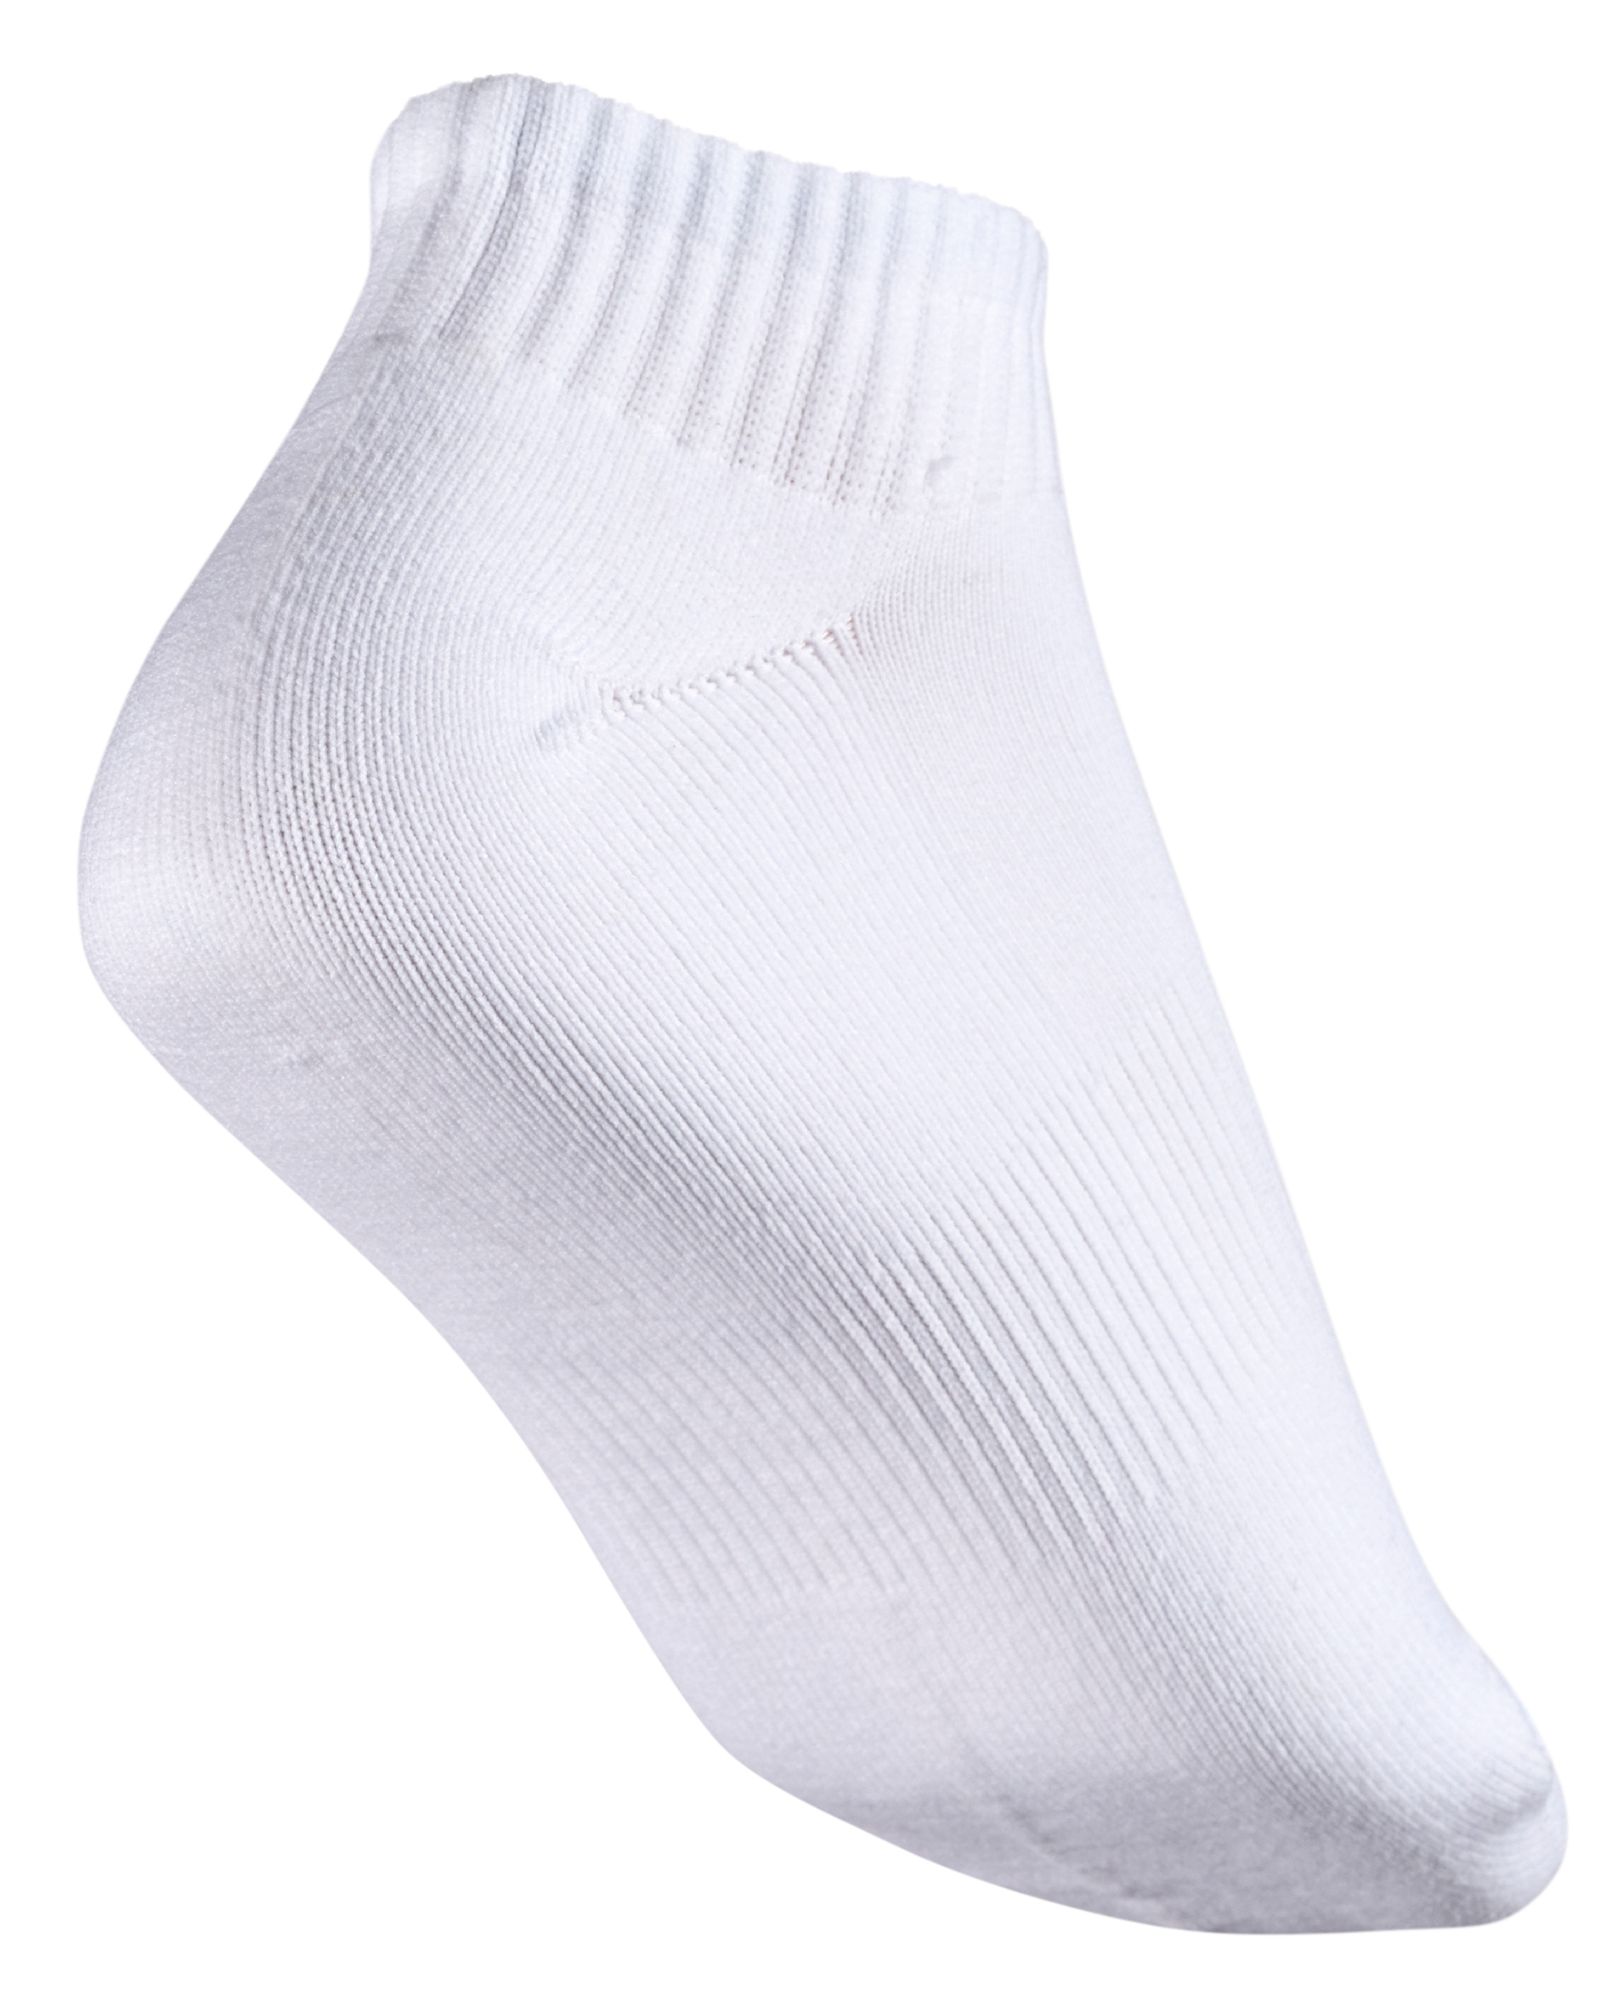 VRST Men's Quarter Socks 3-Pack